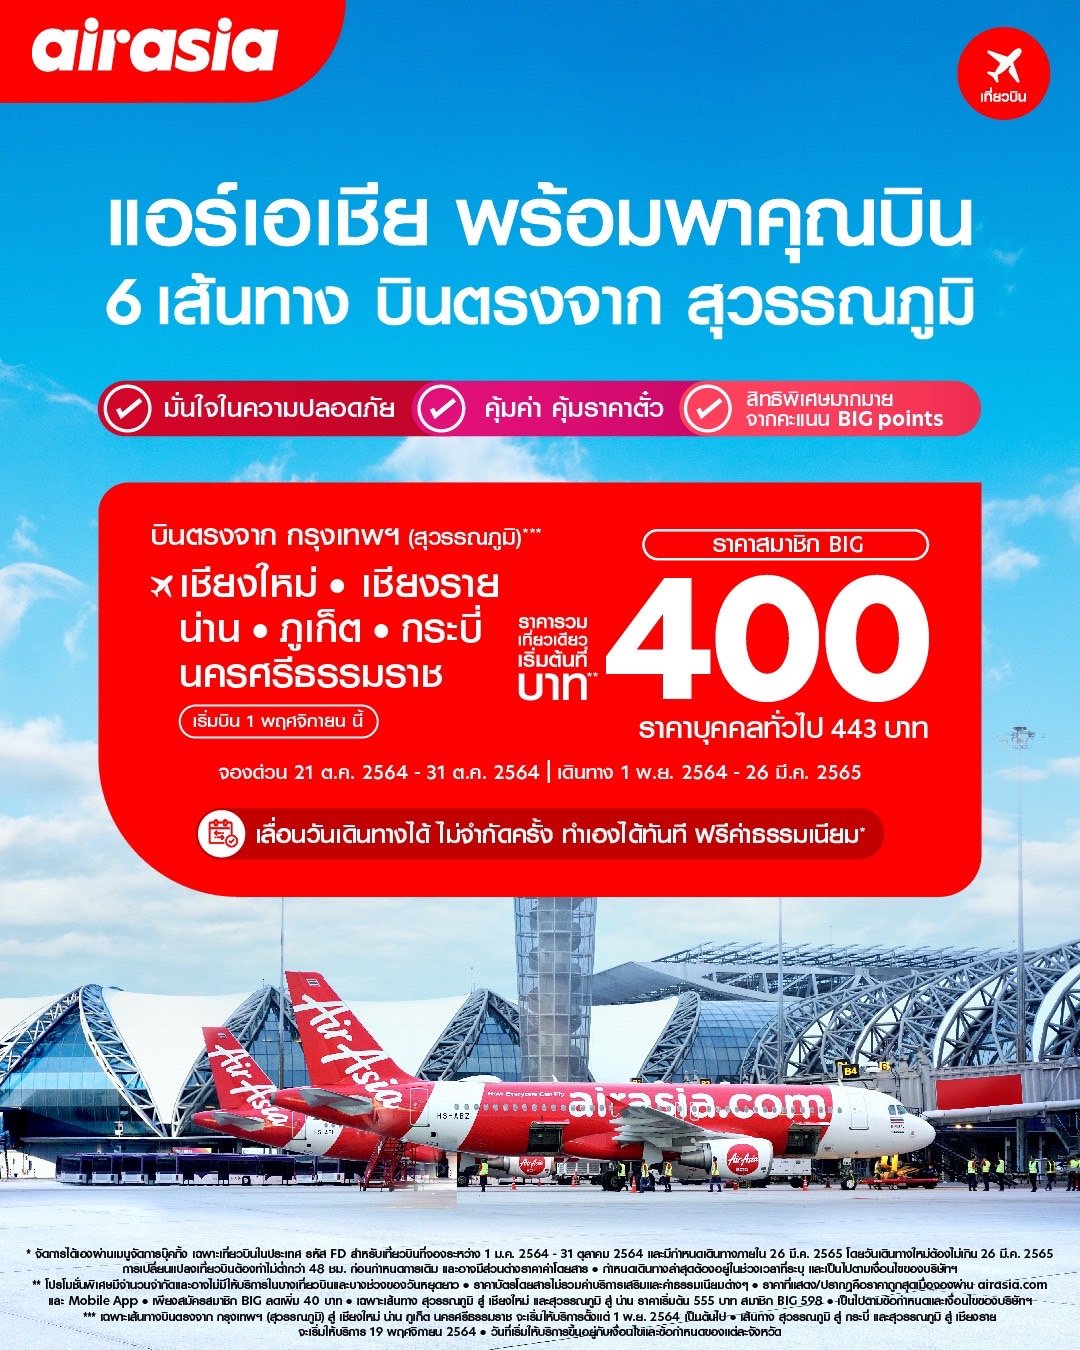 แอร์เอเชียพร้อมบินตรง “สุวรรณภูมิ” พฤศจิกายนนี้ บินคุ้มเริ่มต้น 400 บาท!  พร้อมบินภายในประเทศ รวม 23 ปลายทาง 36 เส้นทาง สูงสุดกว่า 60 เที่ยวบินต่อวัน  — Airasia Newsroom